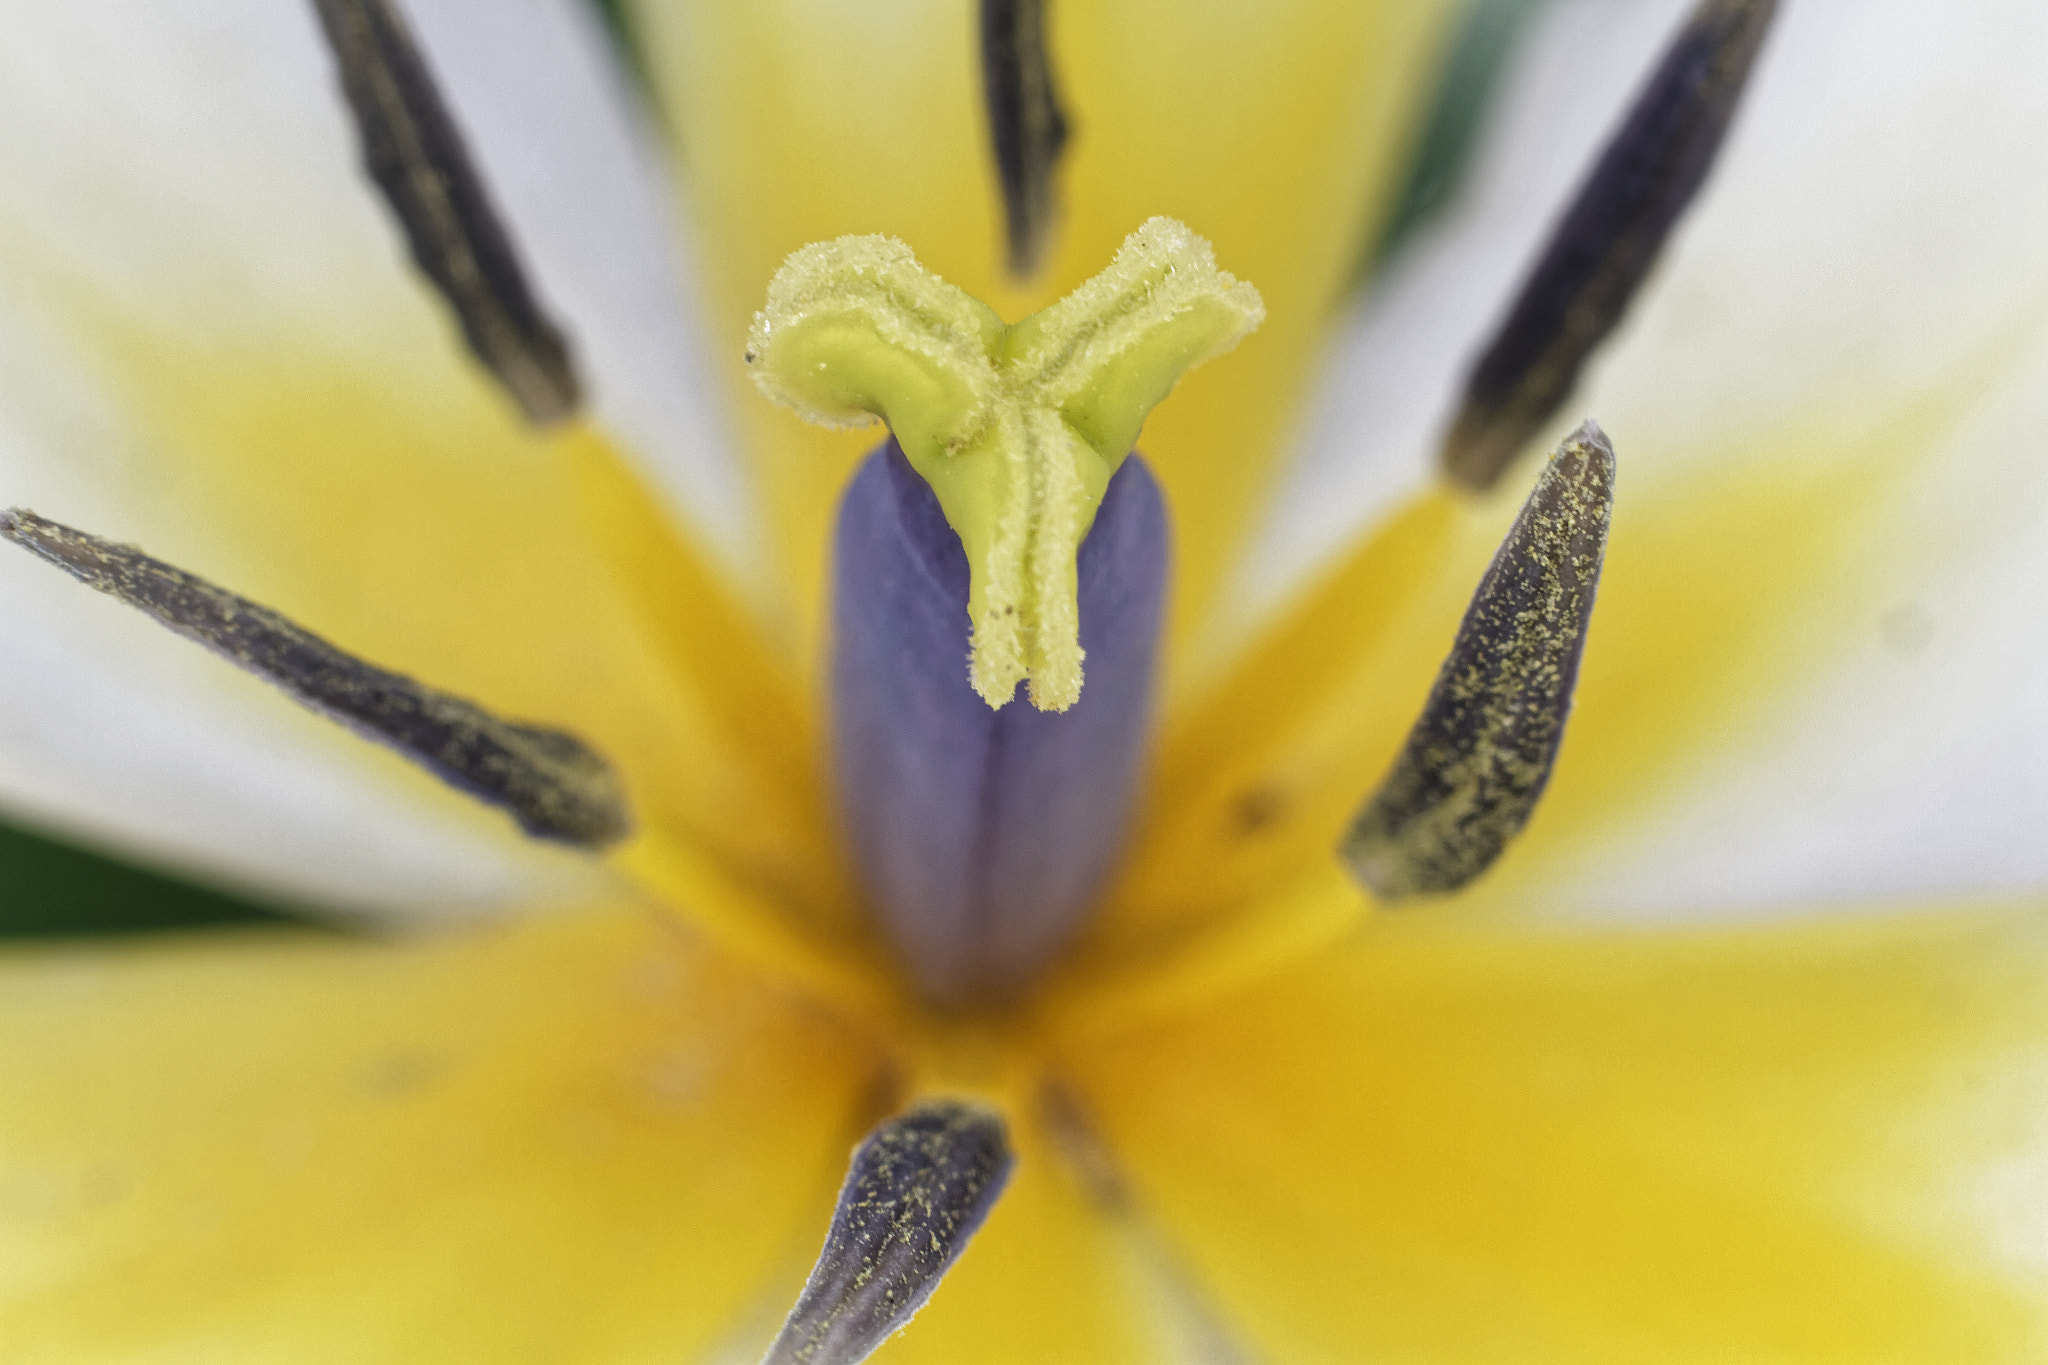 Canon EOS 7D sample photo. Coeur de tulipe photography